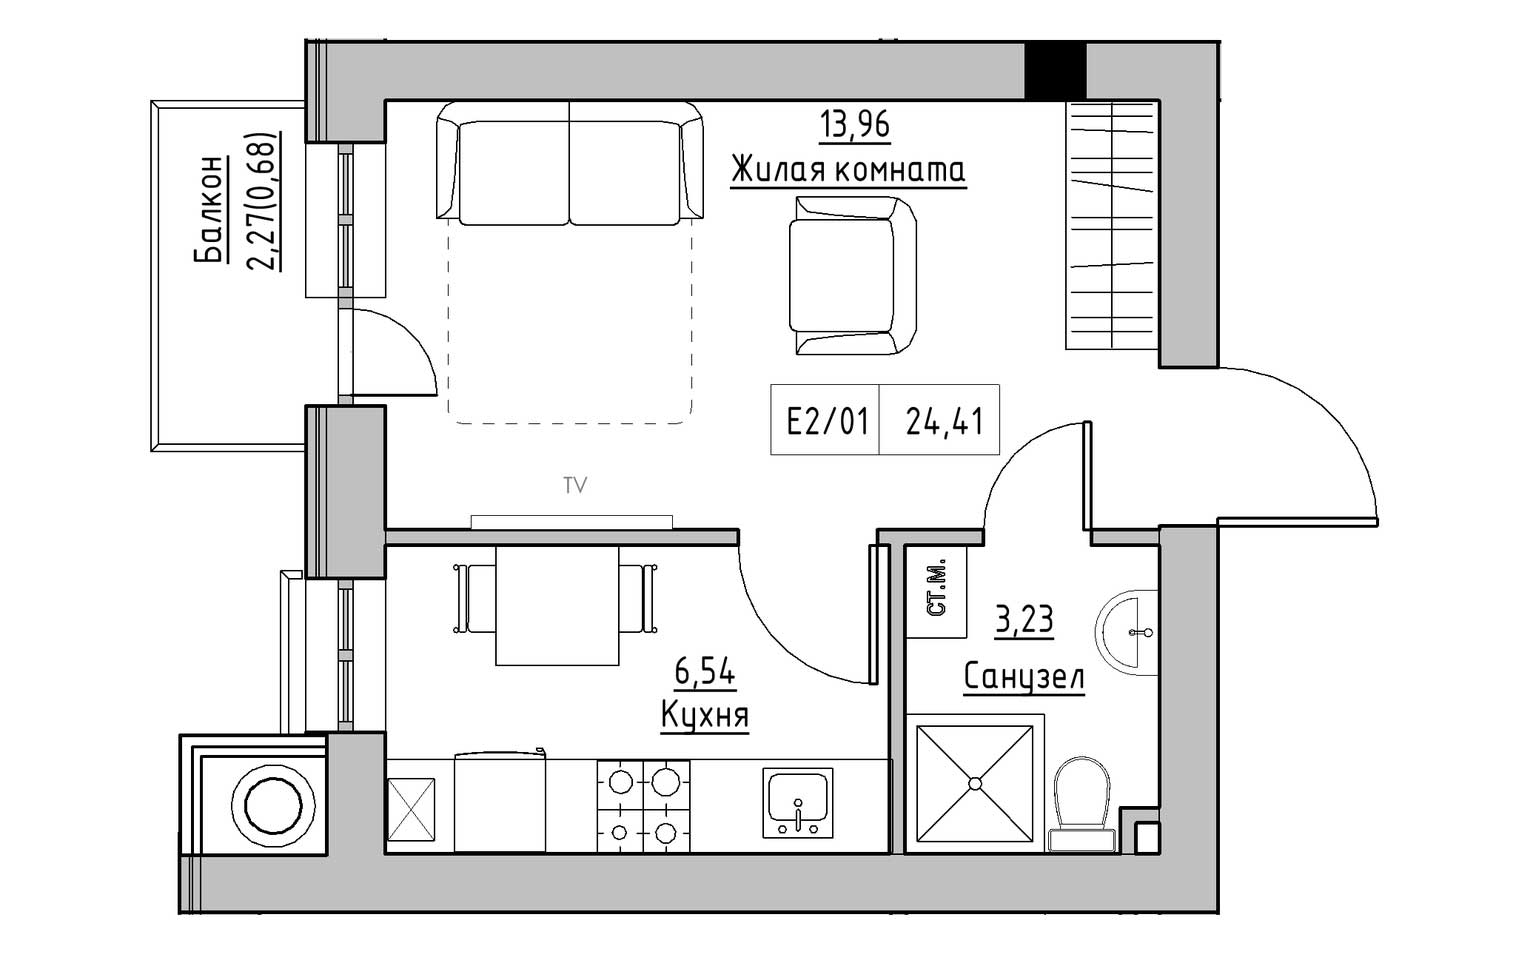 Планировка 1-к квартира площей 24.41м2, KS-009-02/0005.